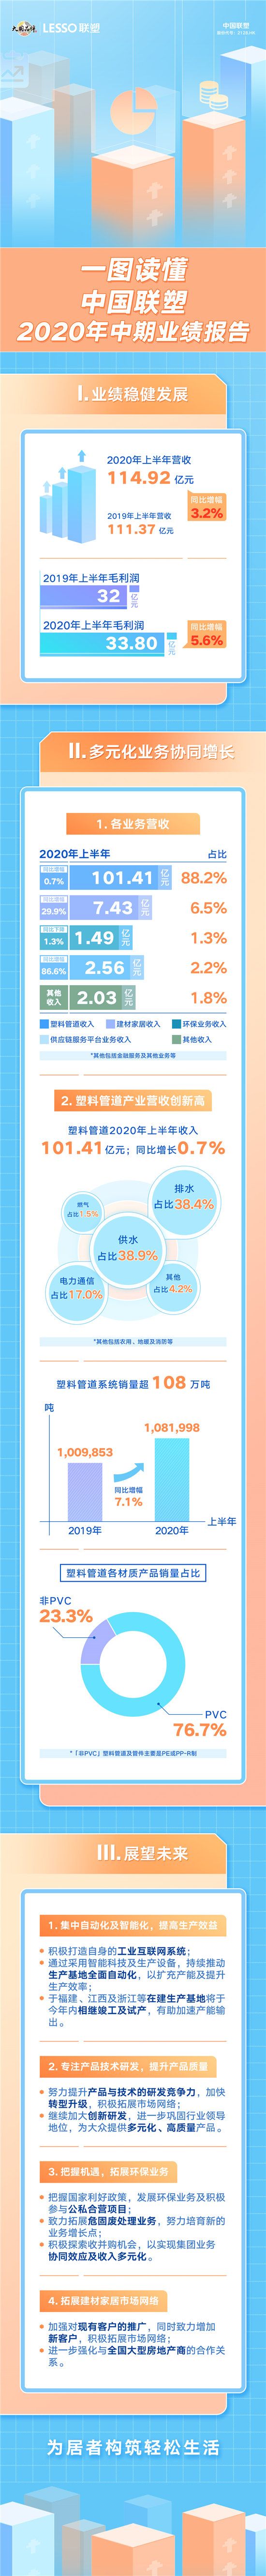 长图-一图读懂中国联塑2020中期业绩报告_副本.jpg